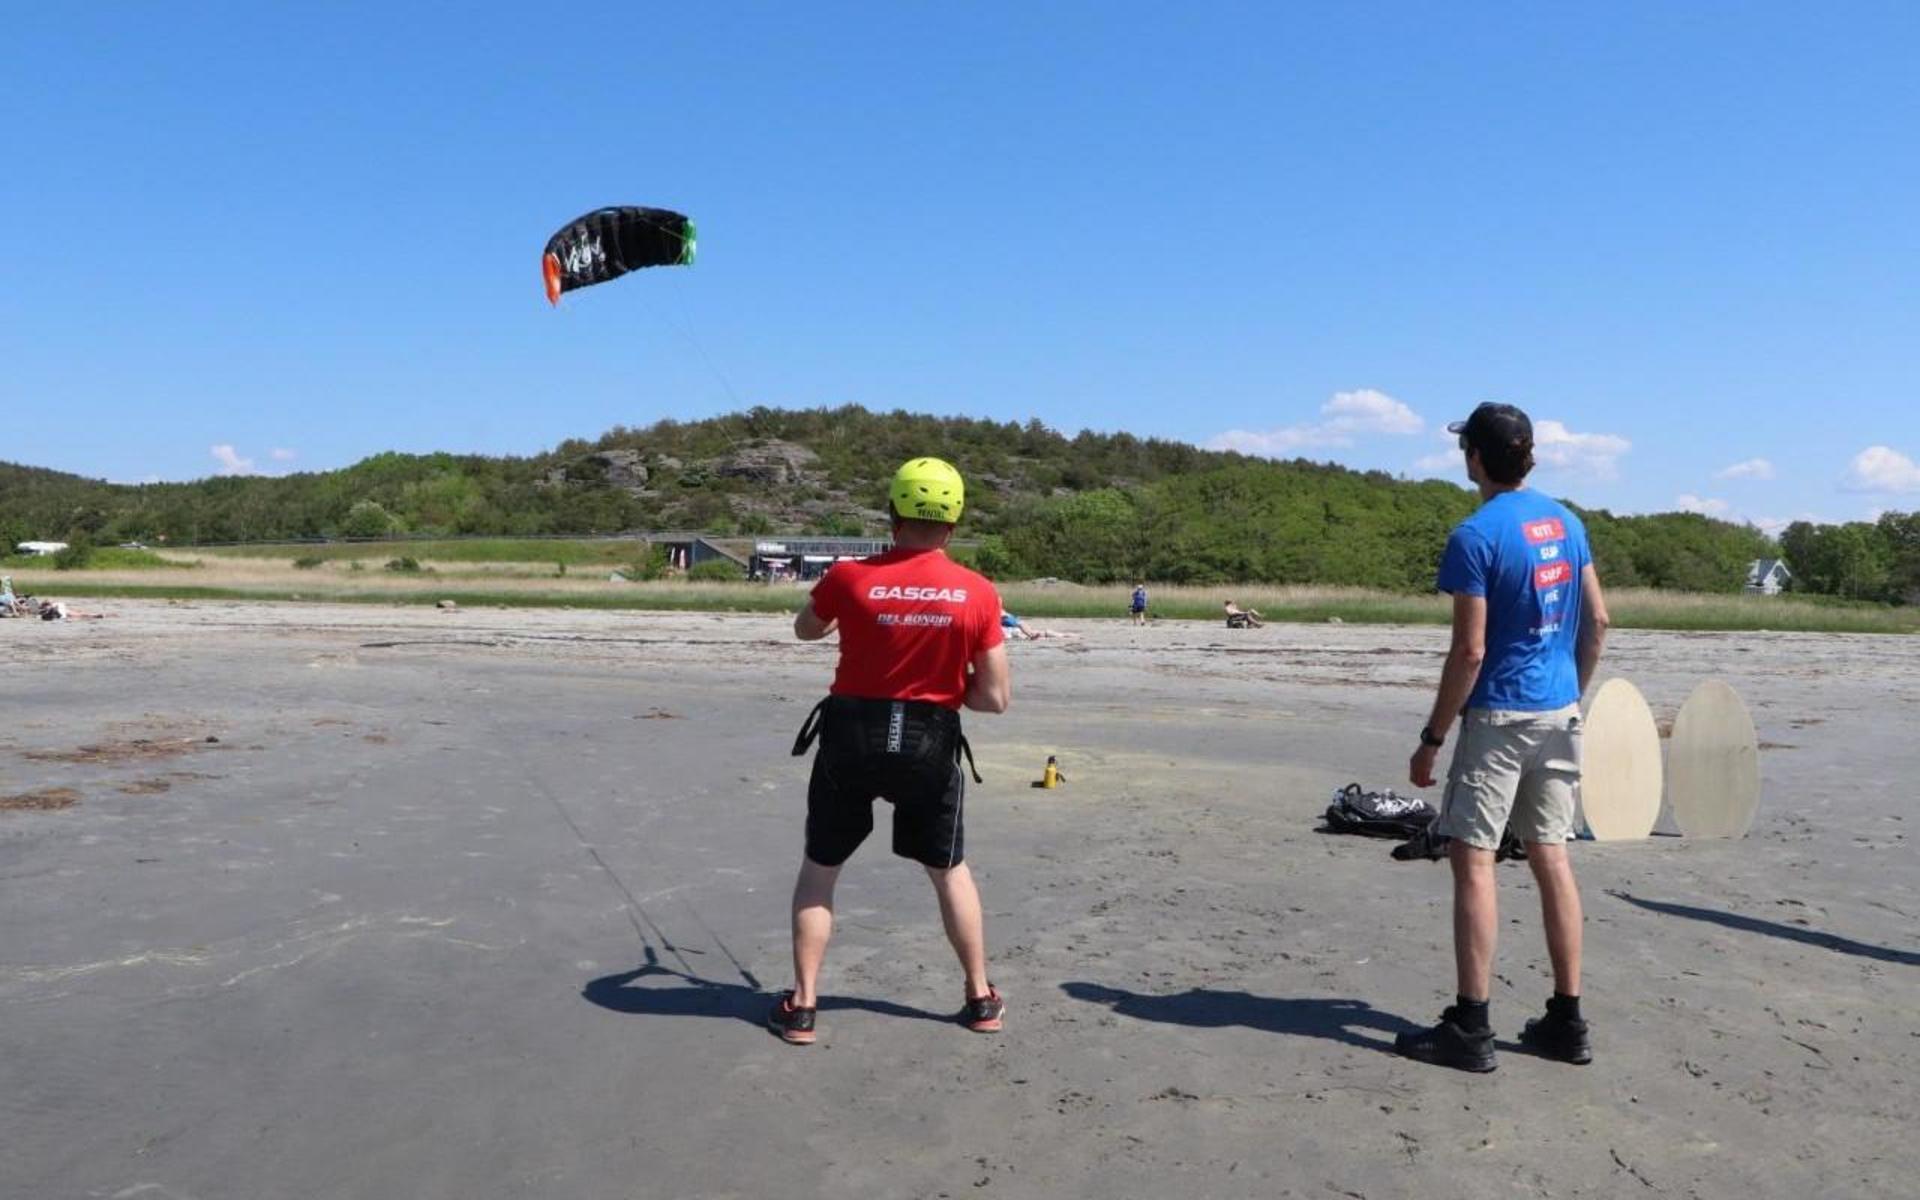 Efter en intensivkurs på tio timmar brukar man kunna kitesurfa, säger Charles Kallin. 